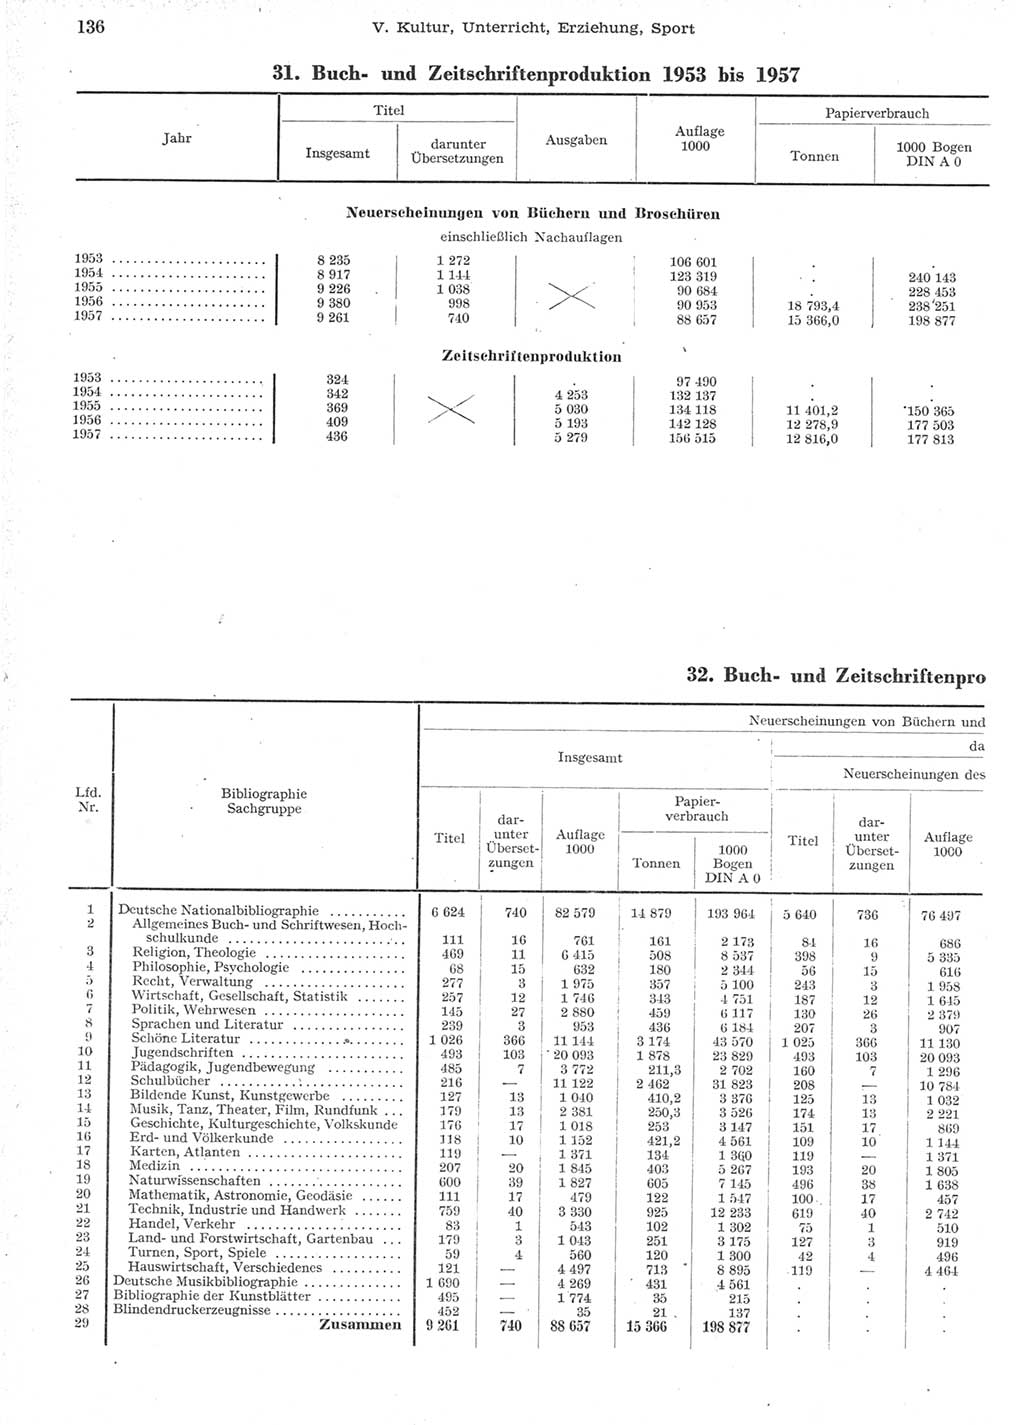 Statistisches Jahrbuch der Deutschen Demokratischen Republik (DDR) 1957, Seite 136 (Stat. Jb. DDR 1957, S. 136)